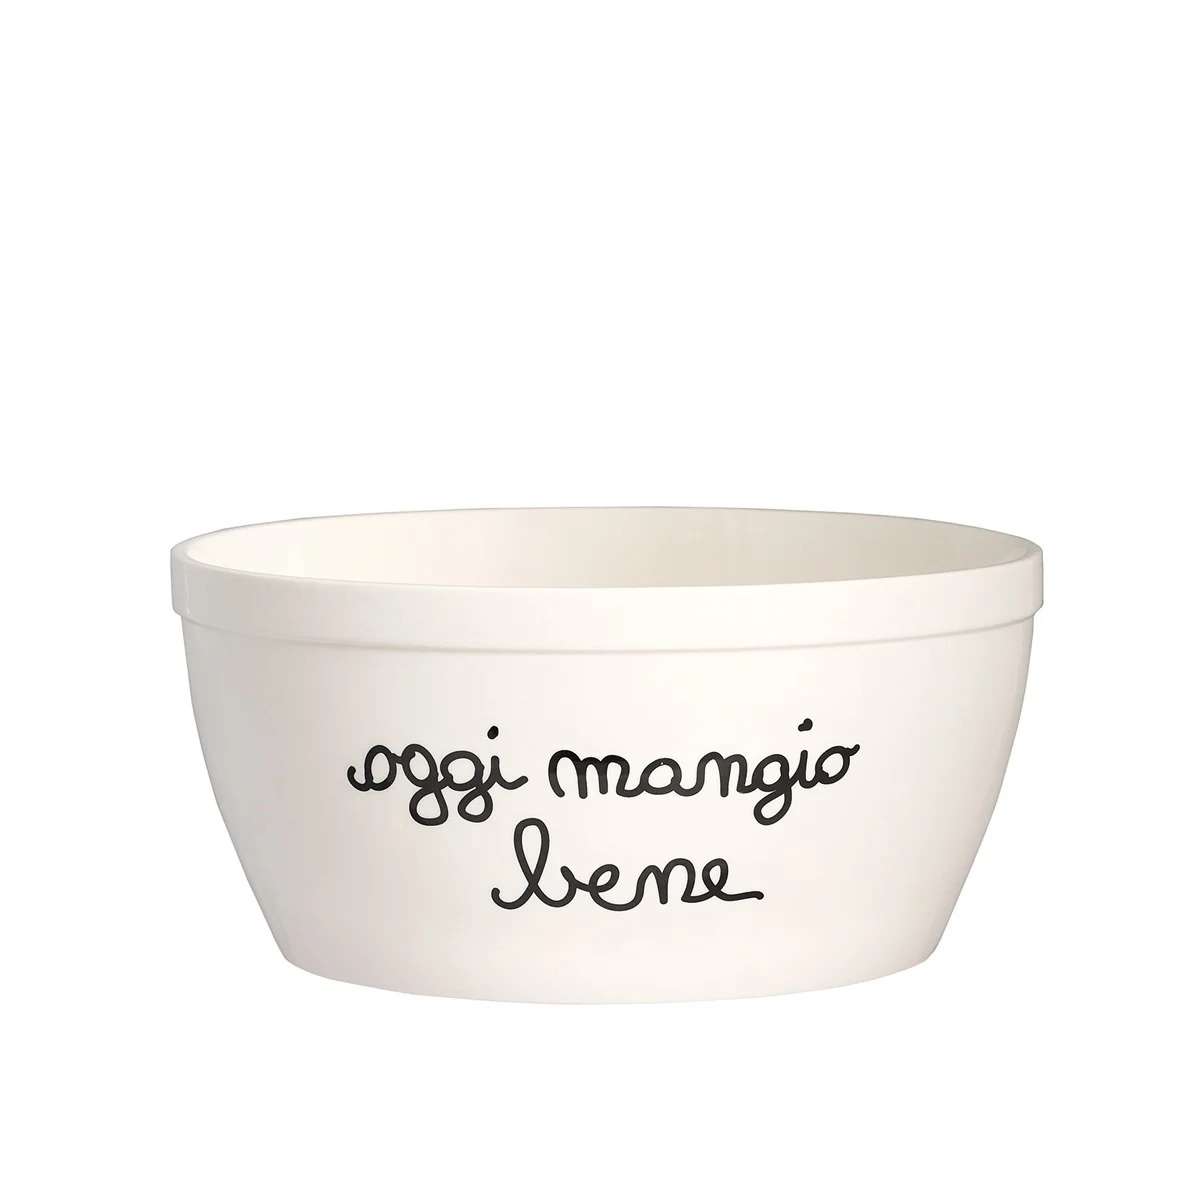 Immagine del prodotto Insalatiera in Ceramica Oggi Mangio Bene ø20 cm x h 9,5 cm | Simple Day